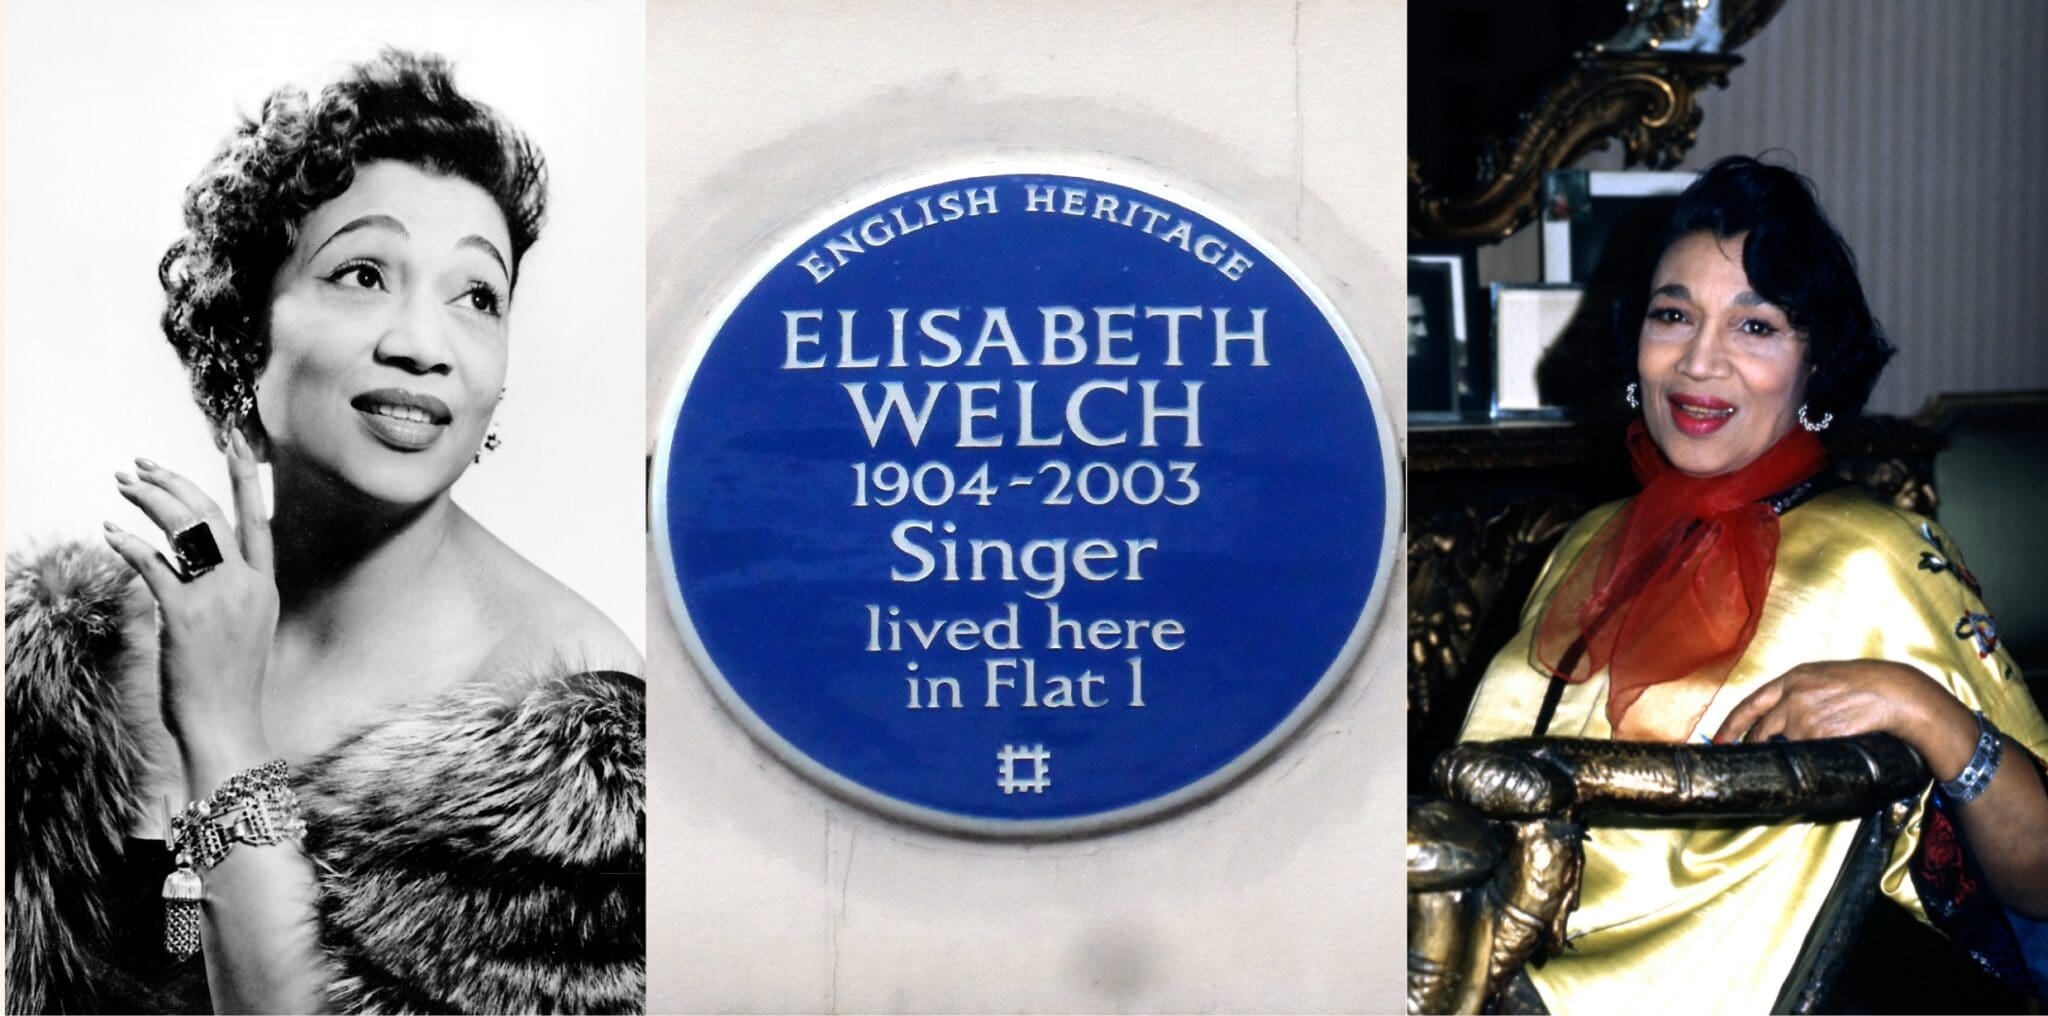 Elisabeth Welch - Knightsbridge, London